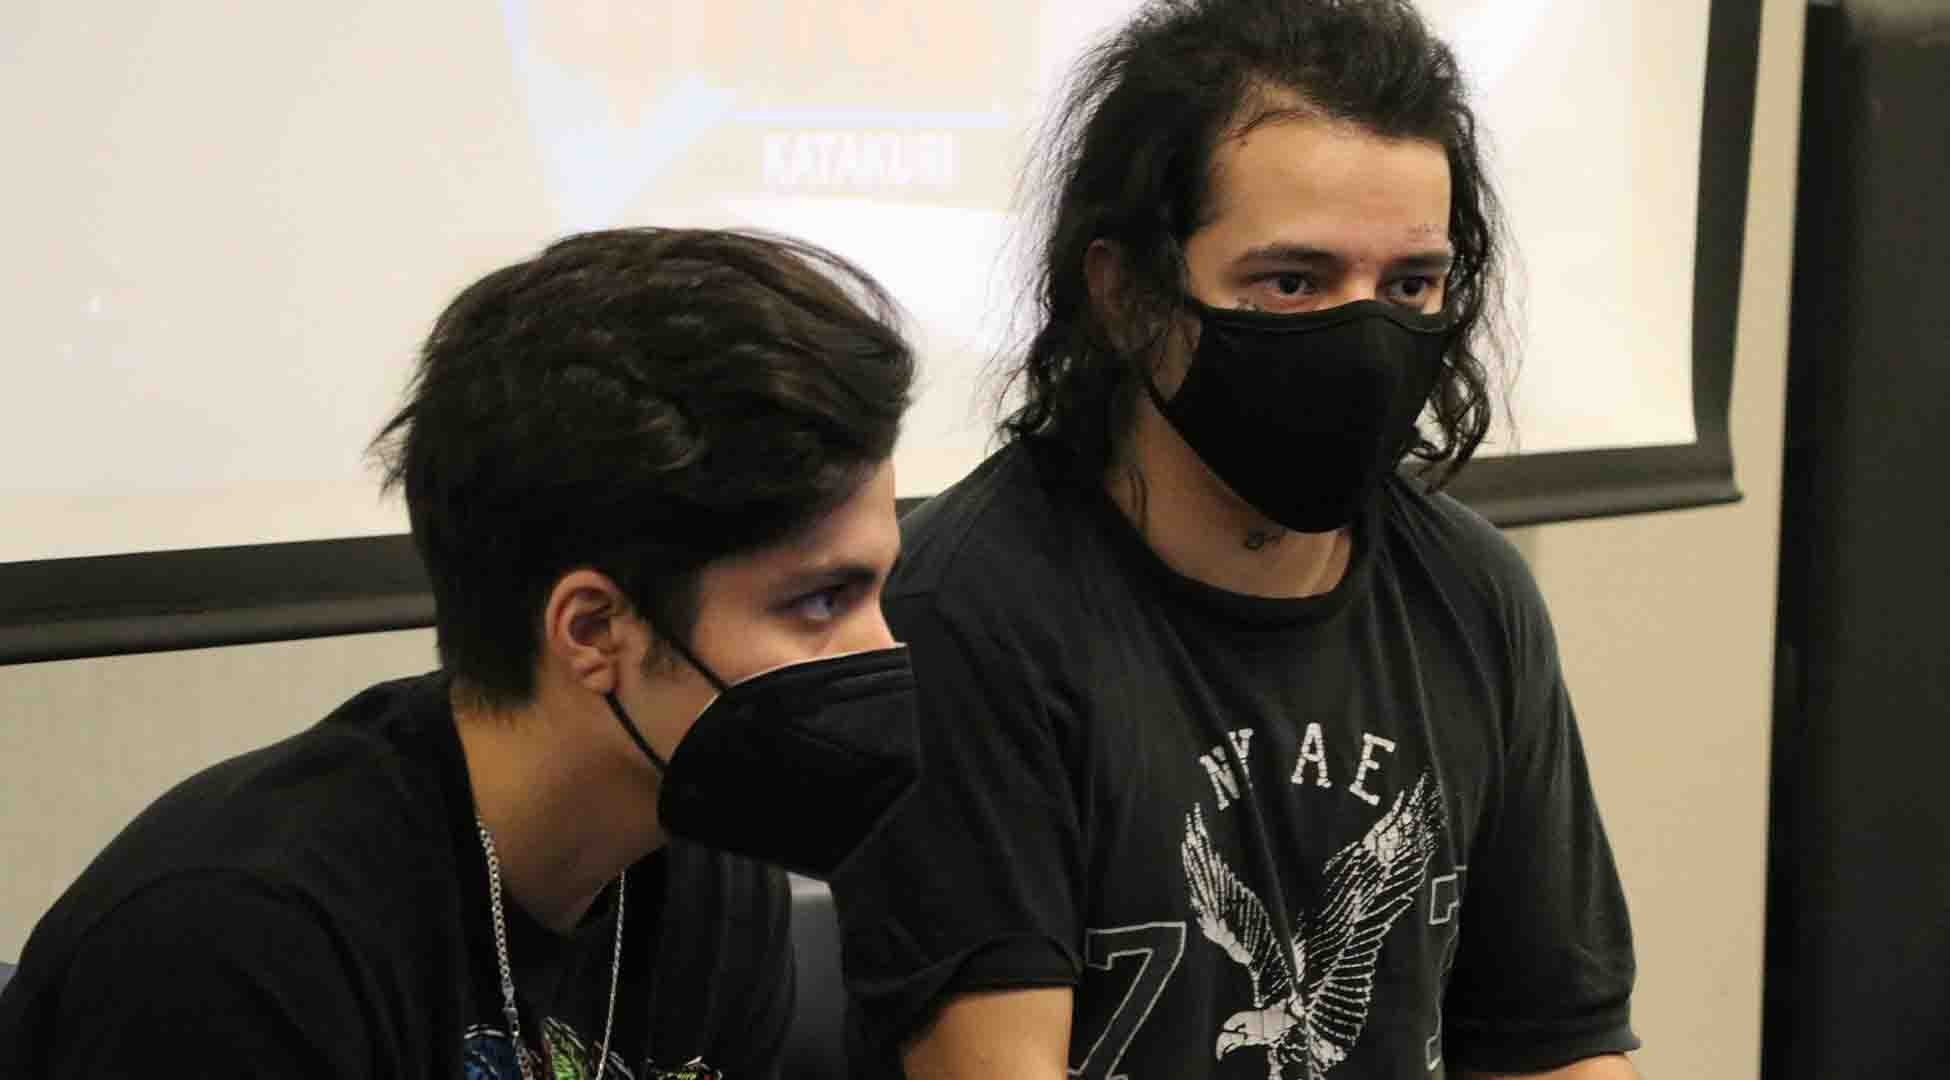 Competencia videojuegos- aniversario Tec campus Chihuahua